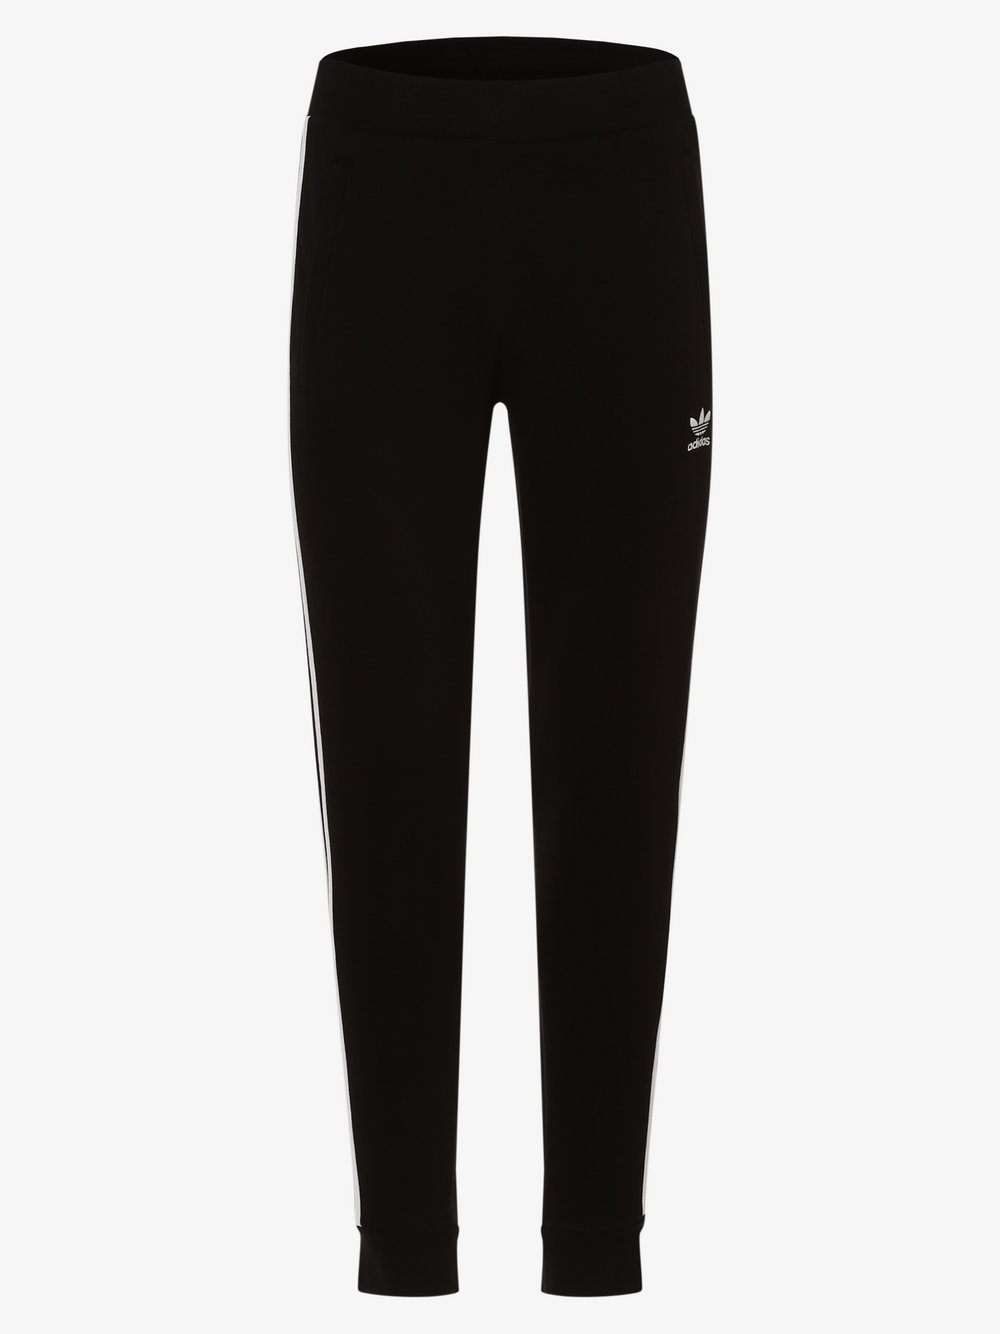 Adidas Originals - Spodnie dresowe męskie, czarny